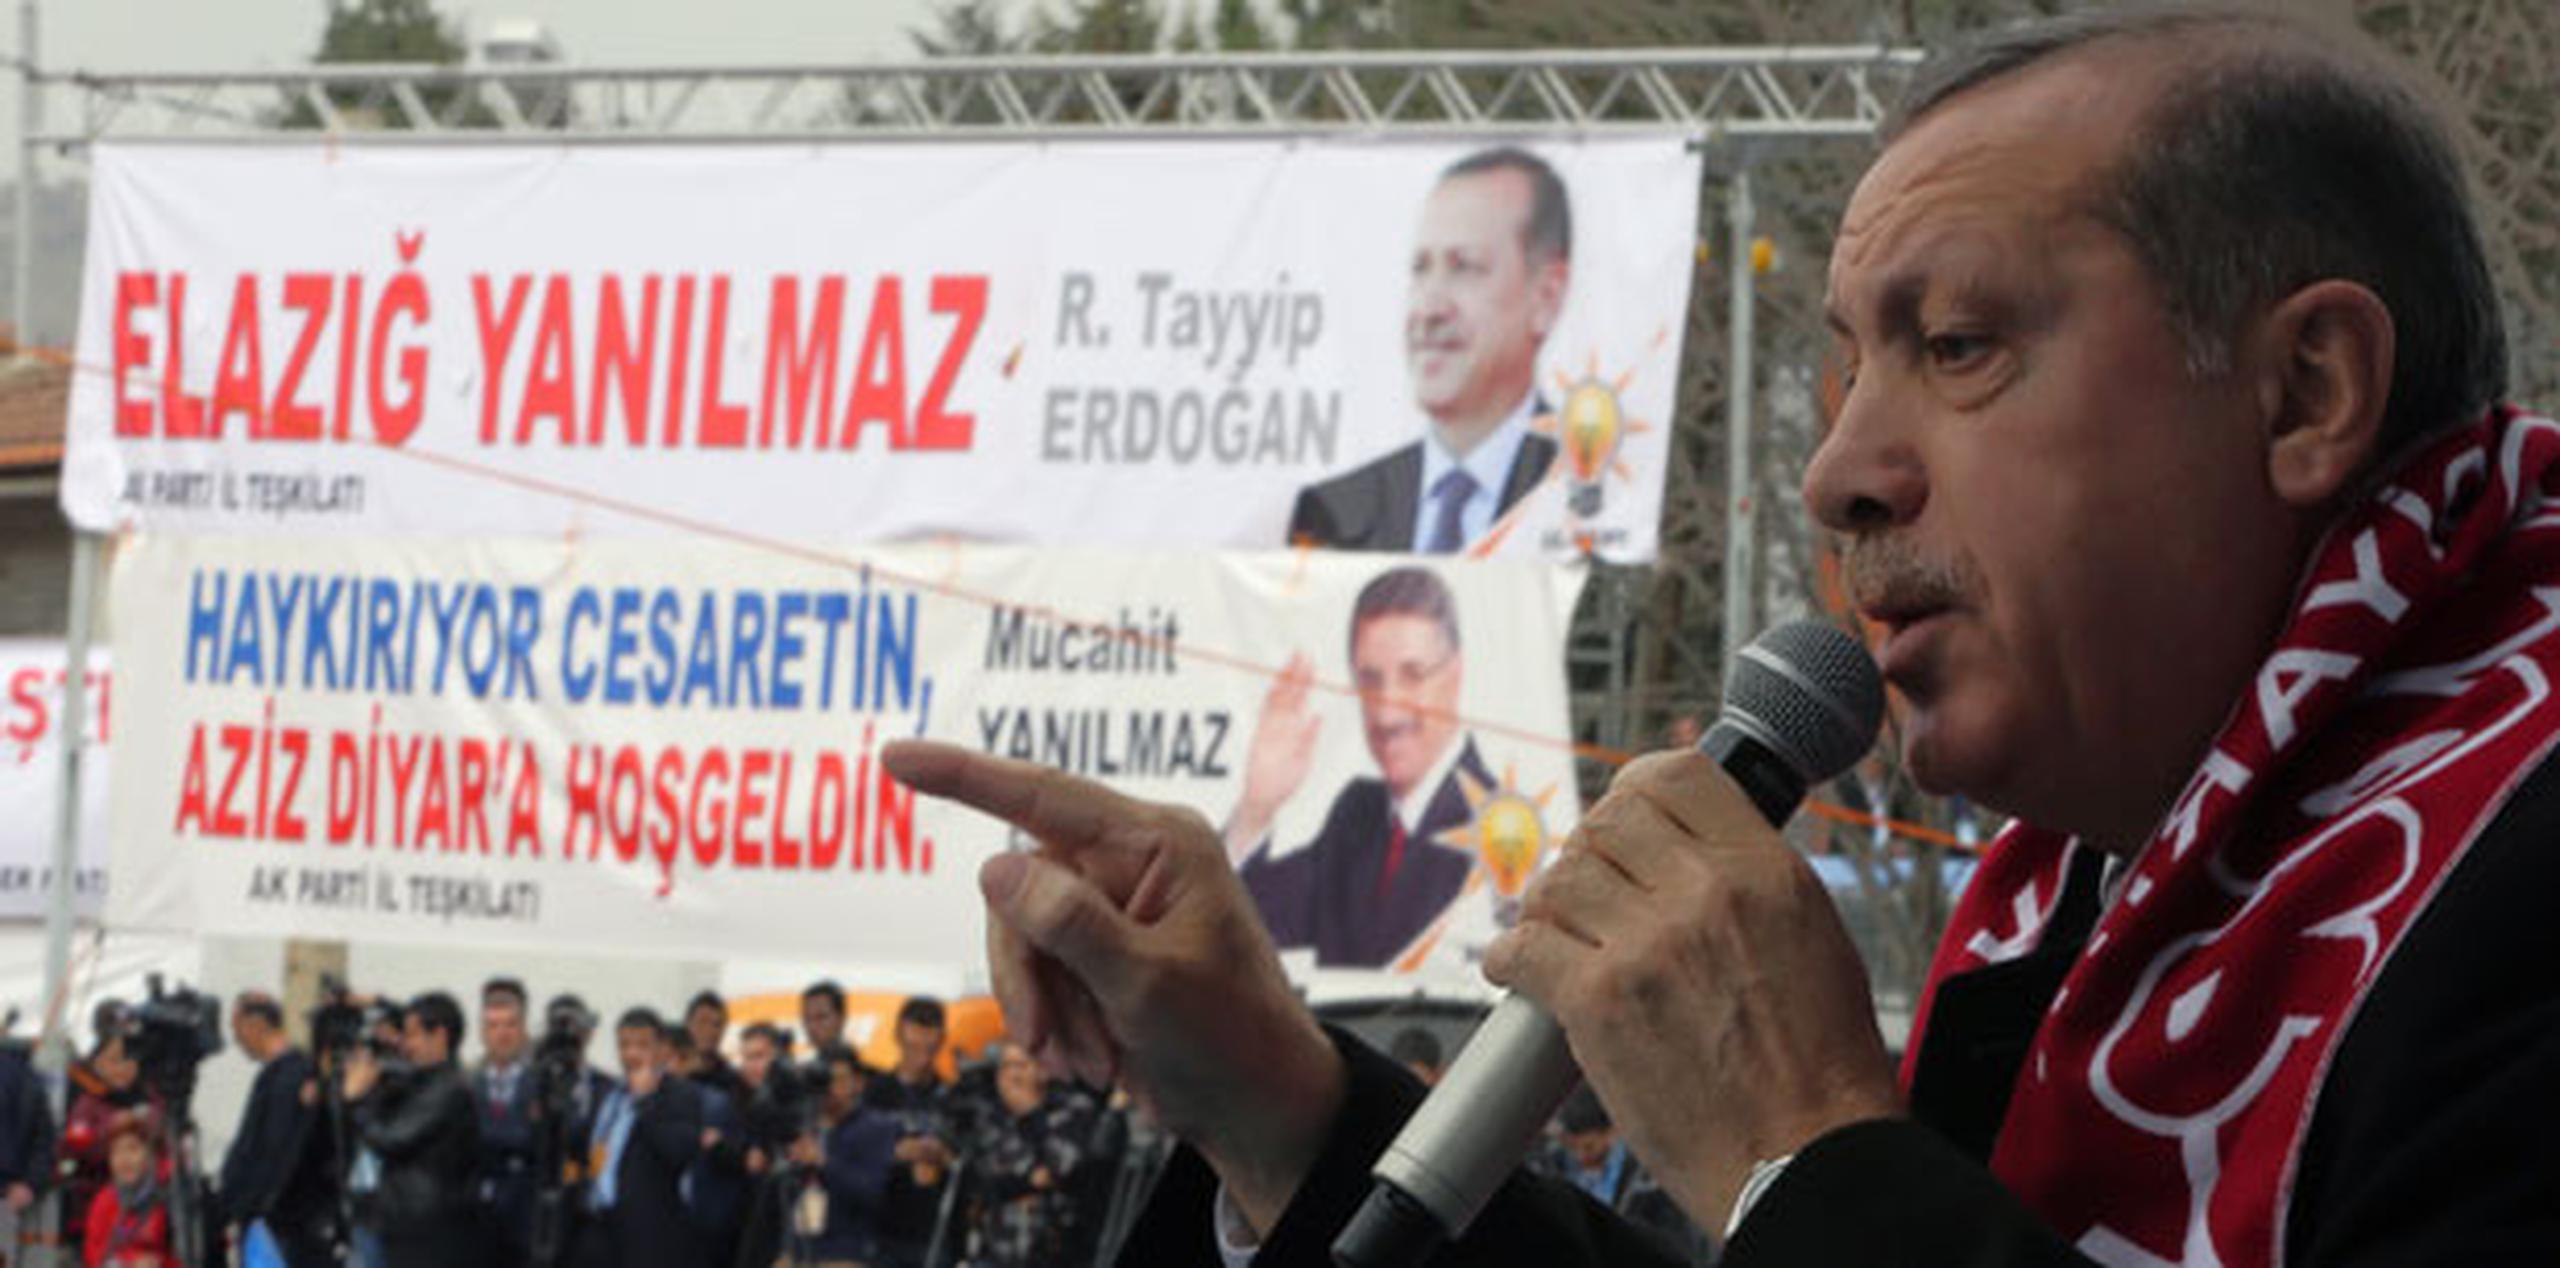 El presidente de Turquía, Abdullah G l, dijo que solo se puede cerrar estas plataformas si alguien ataca de forma delictiva la vida privada de alguien.(AP)